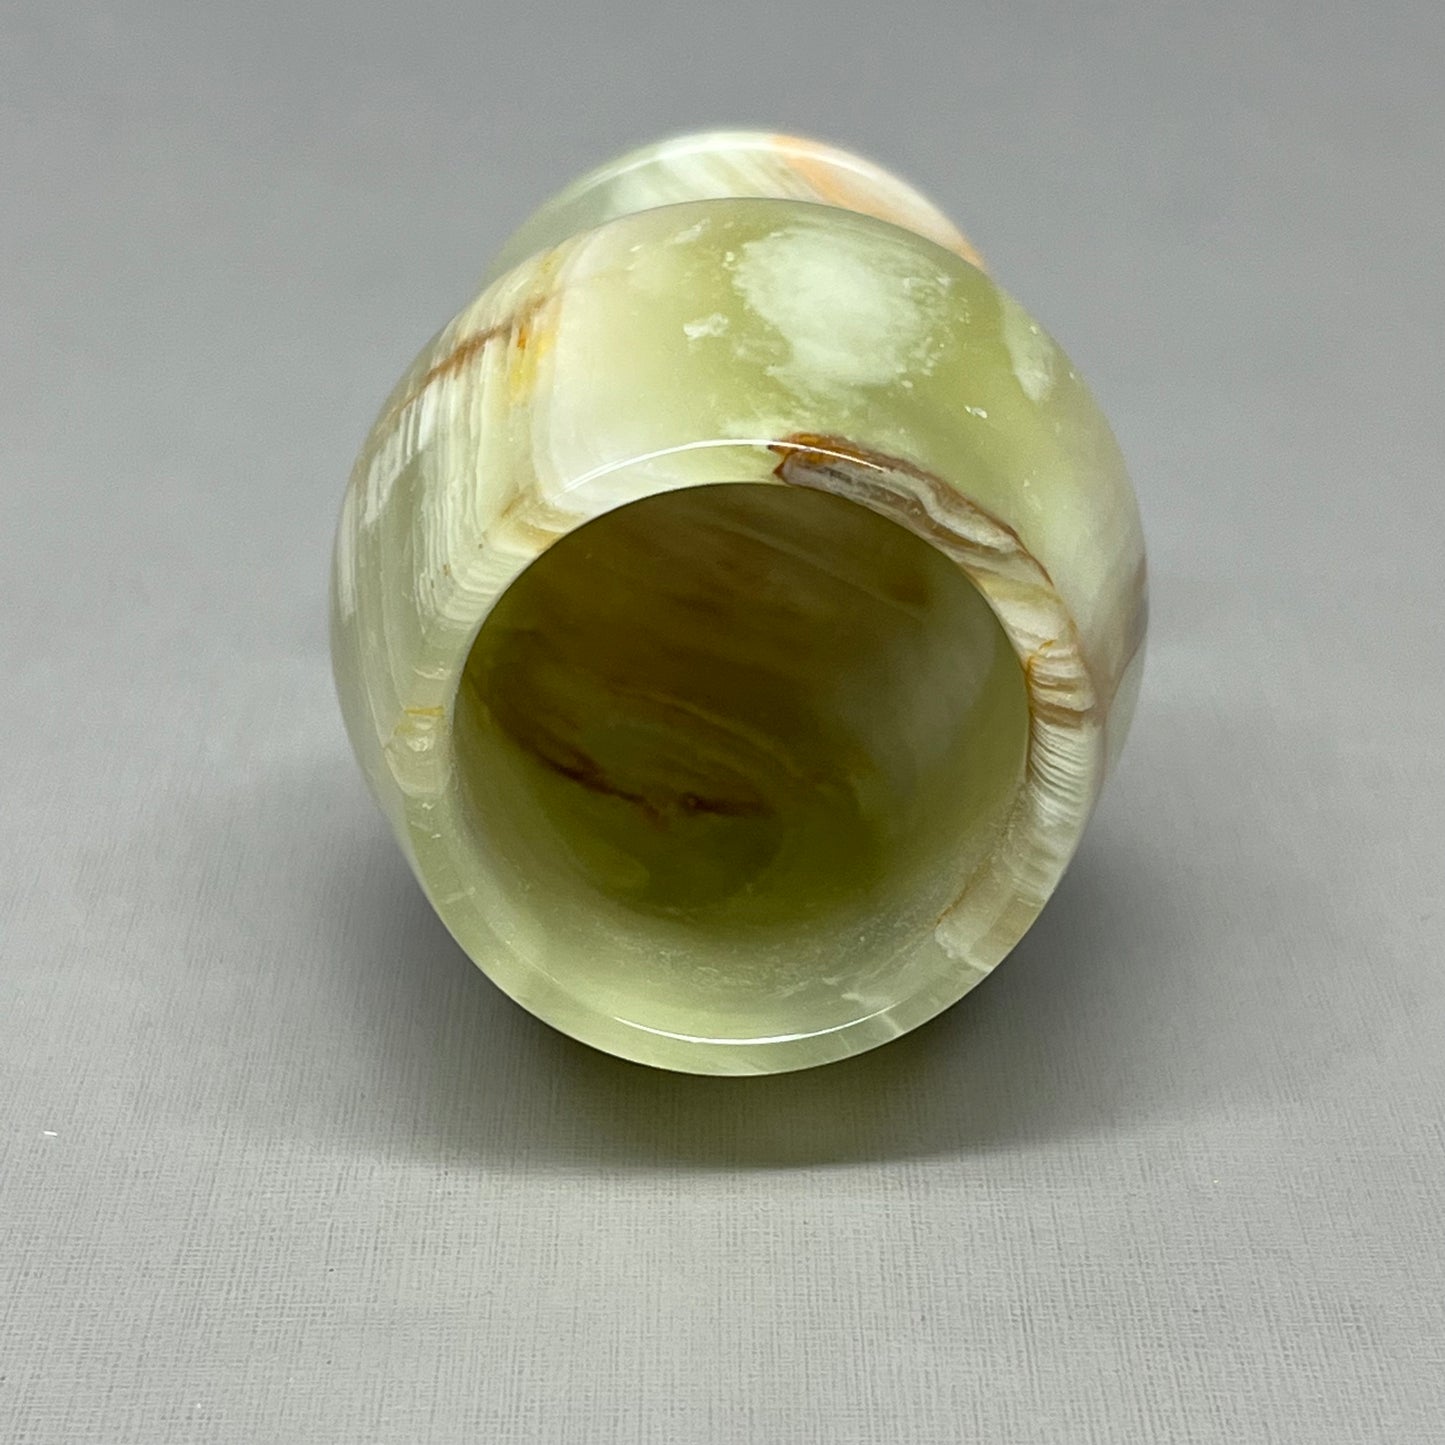 MARBLE GOBLET 10 PACK! Handmade Marble Wine Glass Goblet Multi Green Onyx 3" (New)